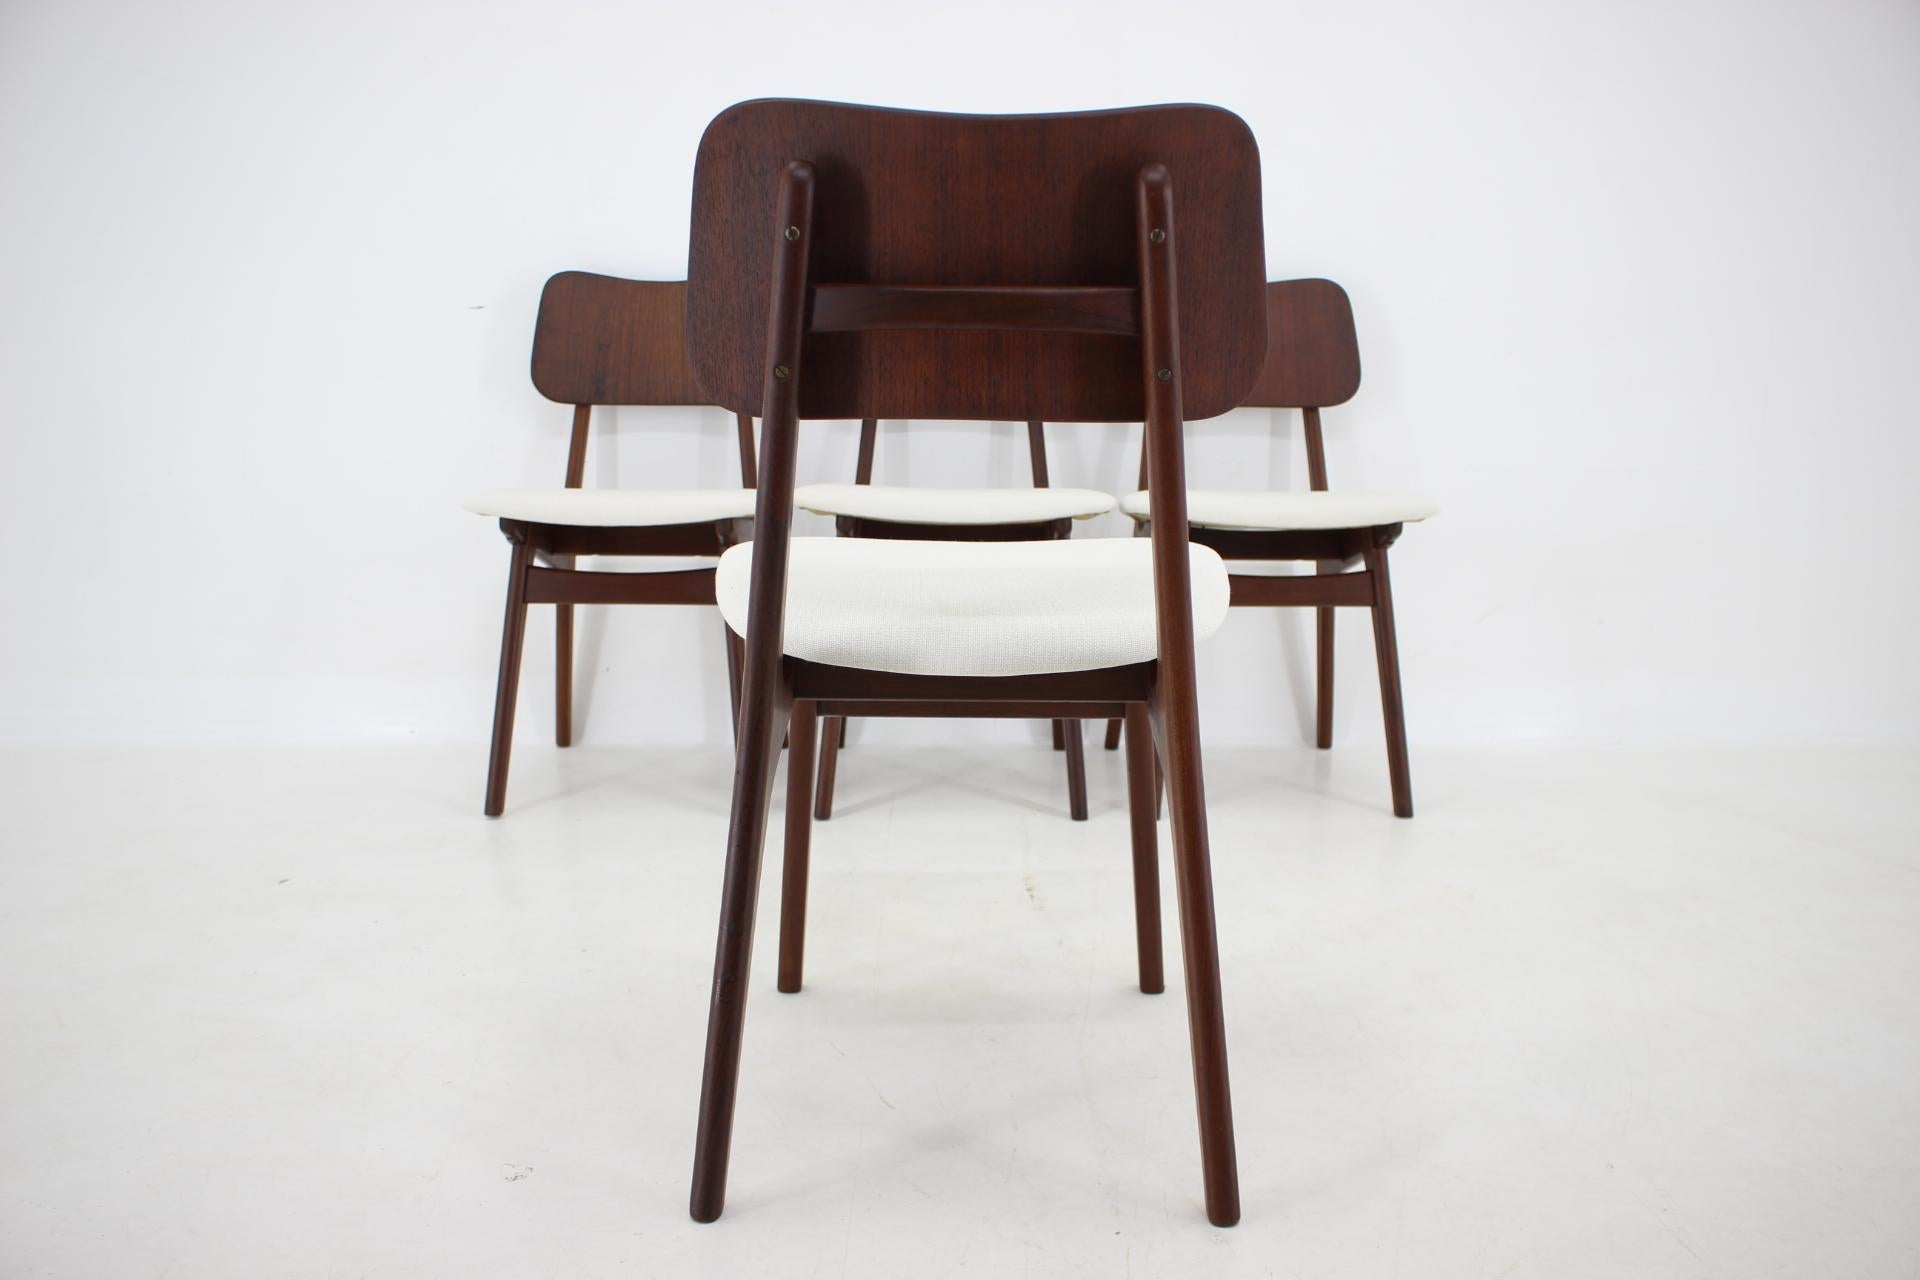 1960s Ib Kofod-Larsen Set Of 4 teak Dining Chairs Model 74, Denmark For Sale 2